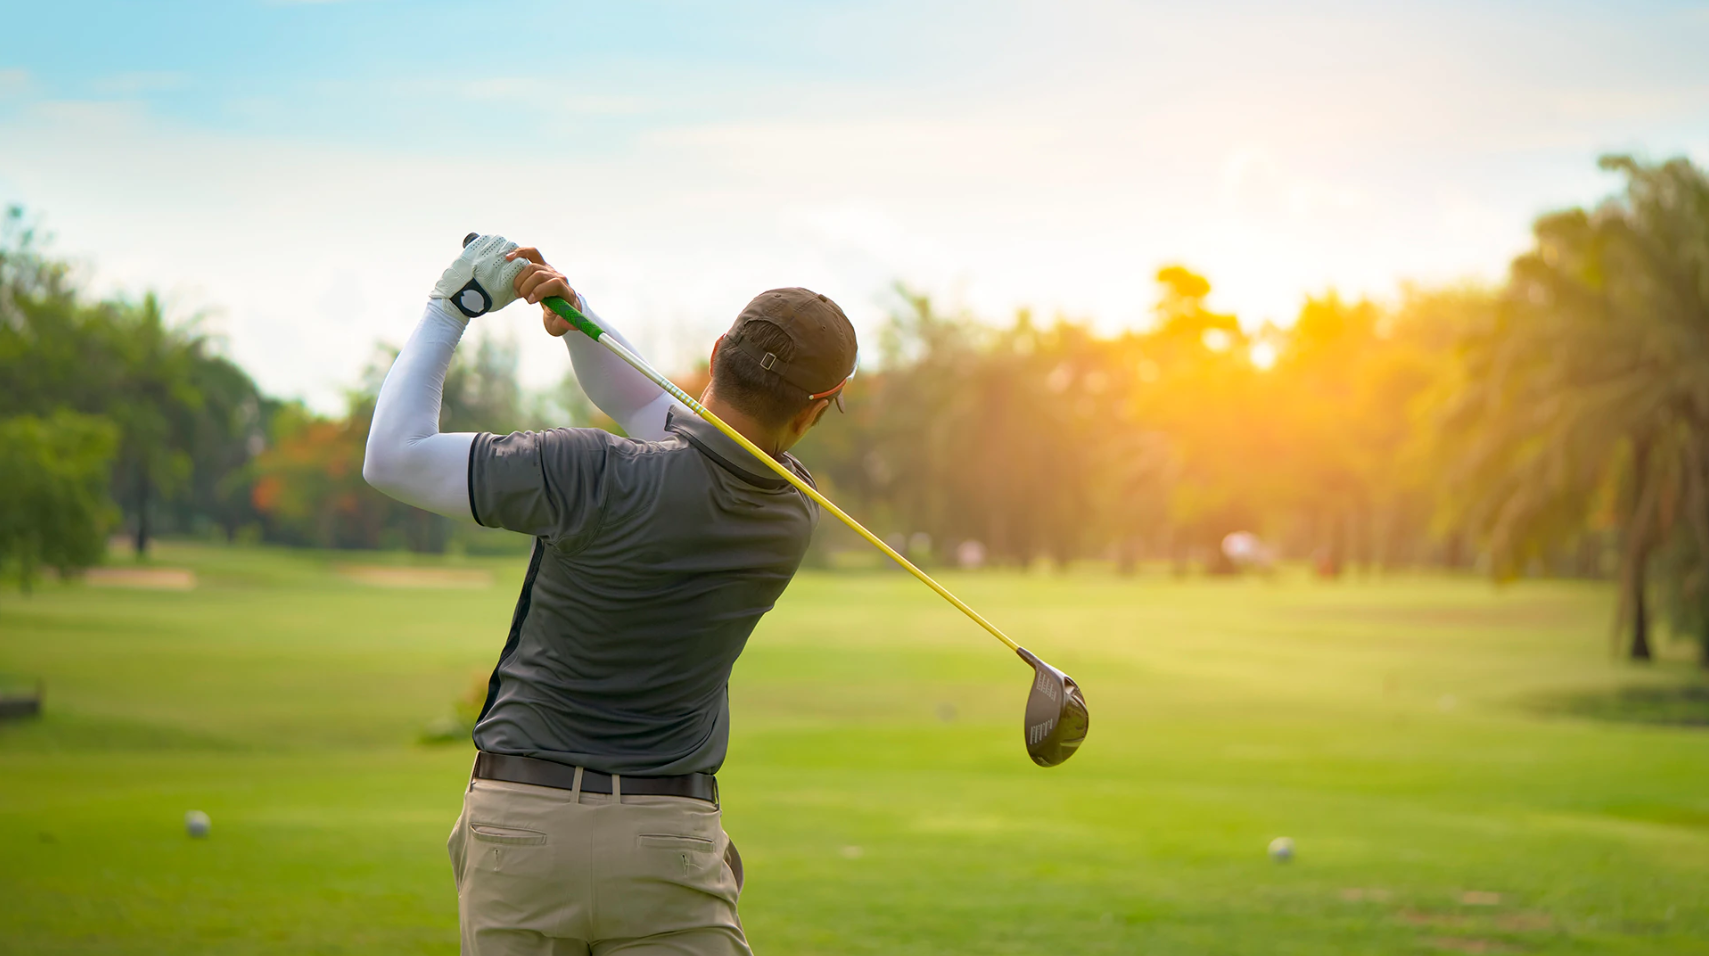 Huyền thoại Golf thế giới Greg Norman đã được Bộ VHTTDL bổ nhiệm là Đại sứ Du lịch Việt Nam nhiệm kỳ 2018-2021 với kỳ vọng góp phần thúc đẩy du lịch Golf Việt Nam phát triển lên tầm cao mới